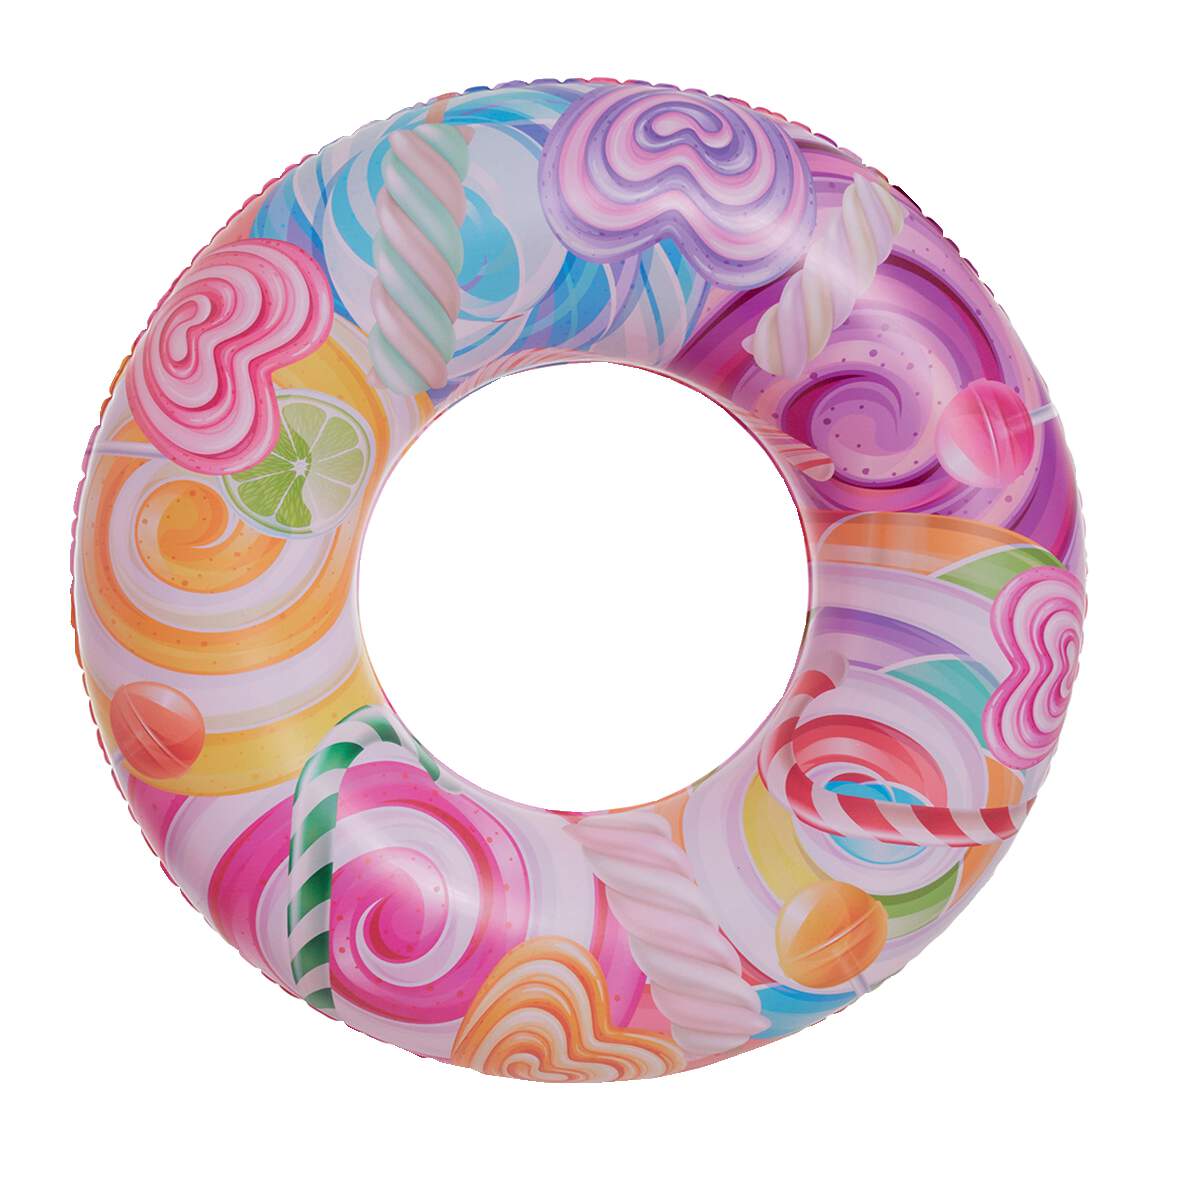 1259388 - Jumboring Candy World aufgeblasen ca. 76 cm